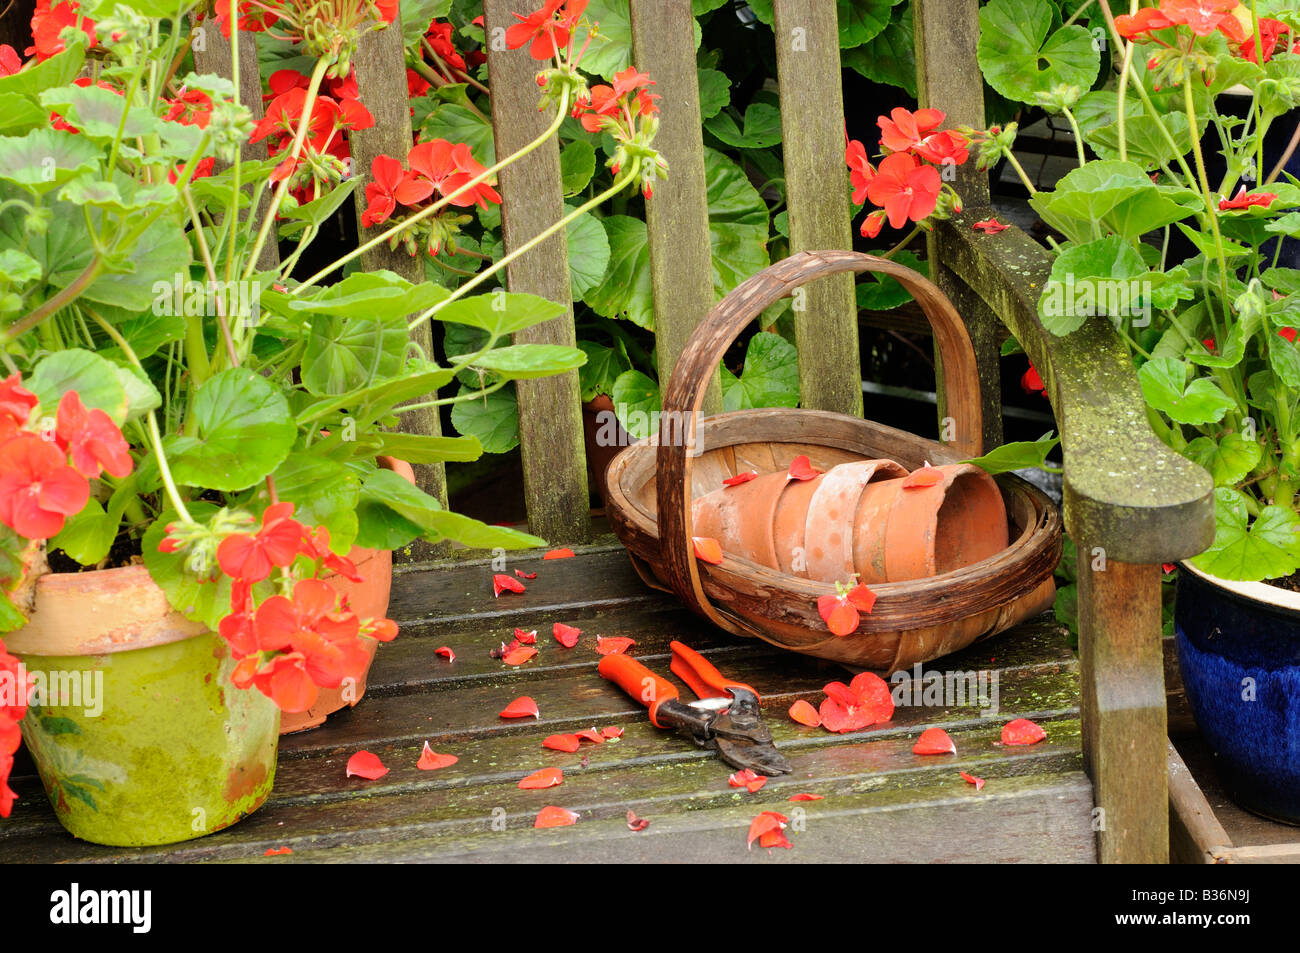 Siège de jardin arbor après la pluie en été avec des géraniums et des articles de jardin août Royaume-uni Norfolk Banque D'Images